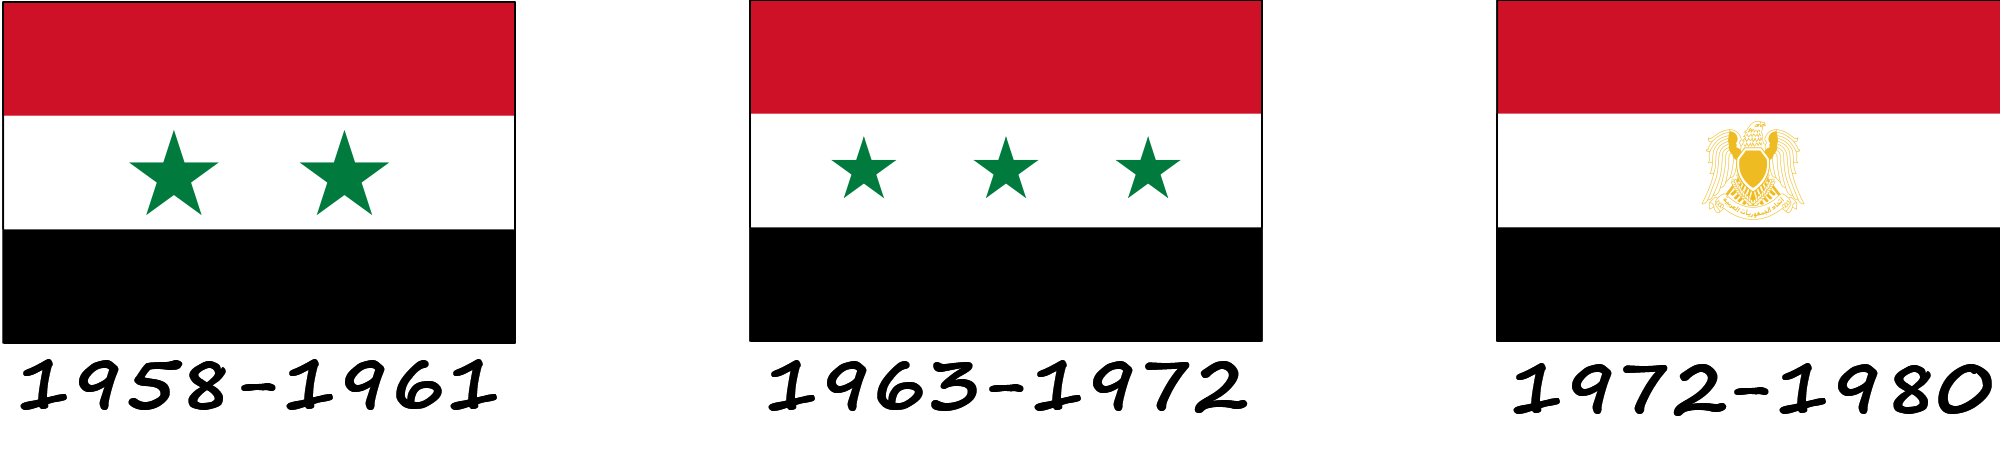 Historia de la bandera siria. ¿Cómo ha cambiado la bandera siria?